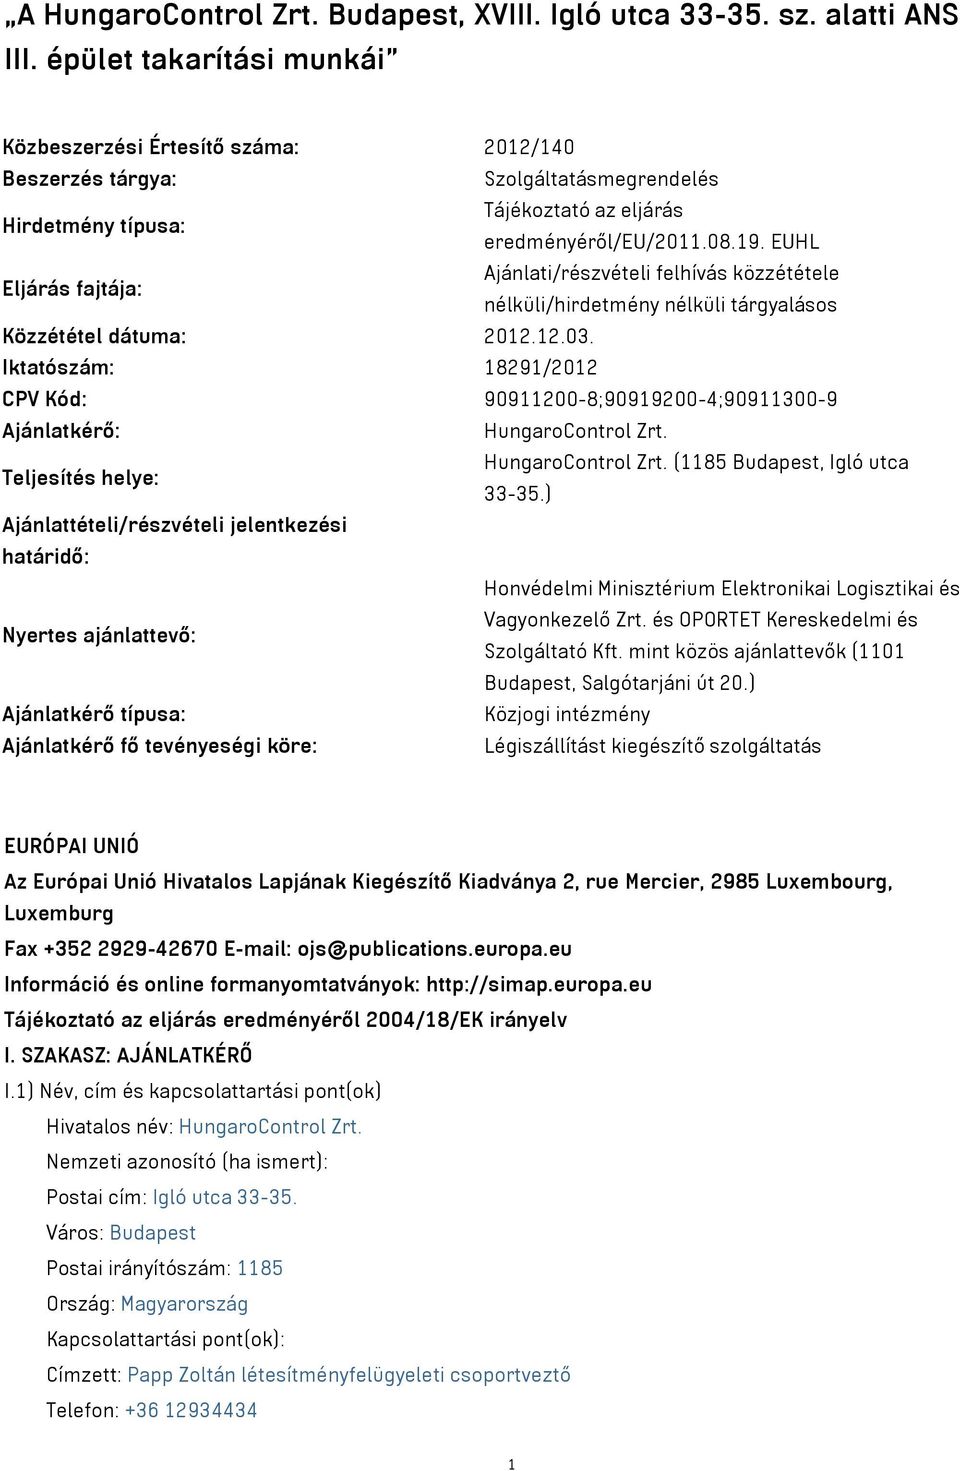 EUHL Eljárás fajtája: Ajánlati/részvételi felhívás közzététele nélküli/hirdetmény nélküli tárgyalásos Közzététel dátuma: 2012.12.03.